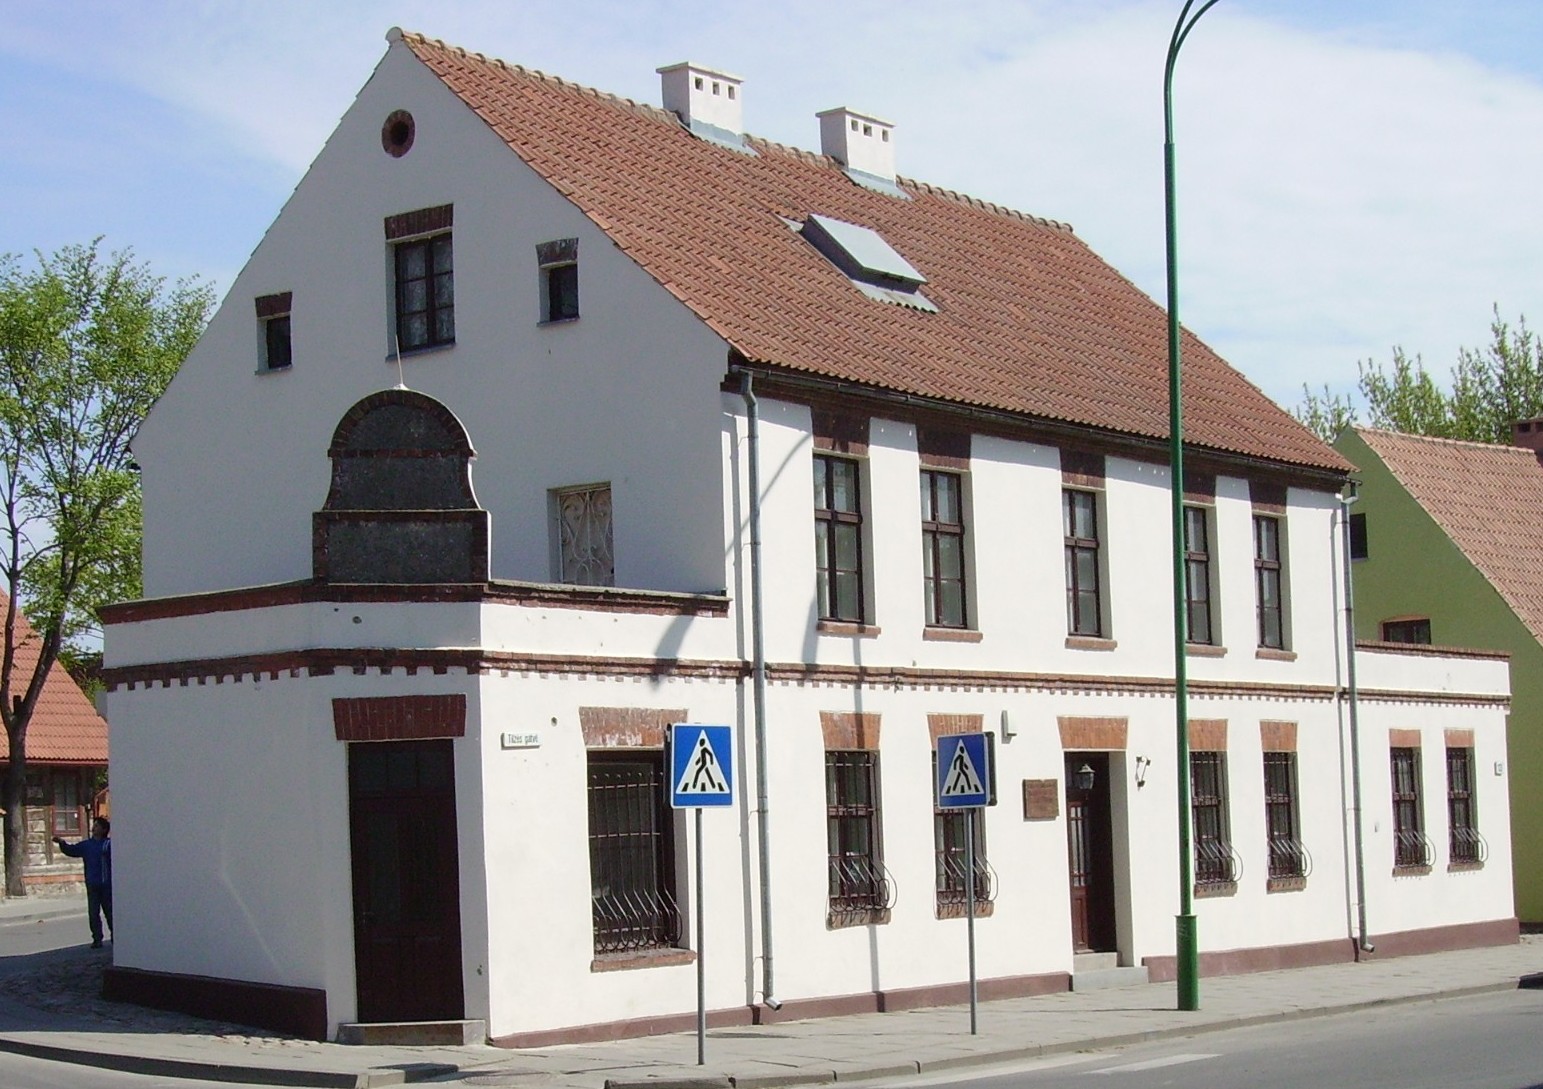 Pastatas Tilžės g. 13, kuriame 1992–2009 m. veikė Baltijos regiono istorijos ir archeologijos institutas